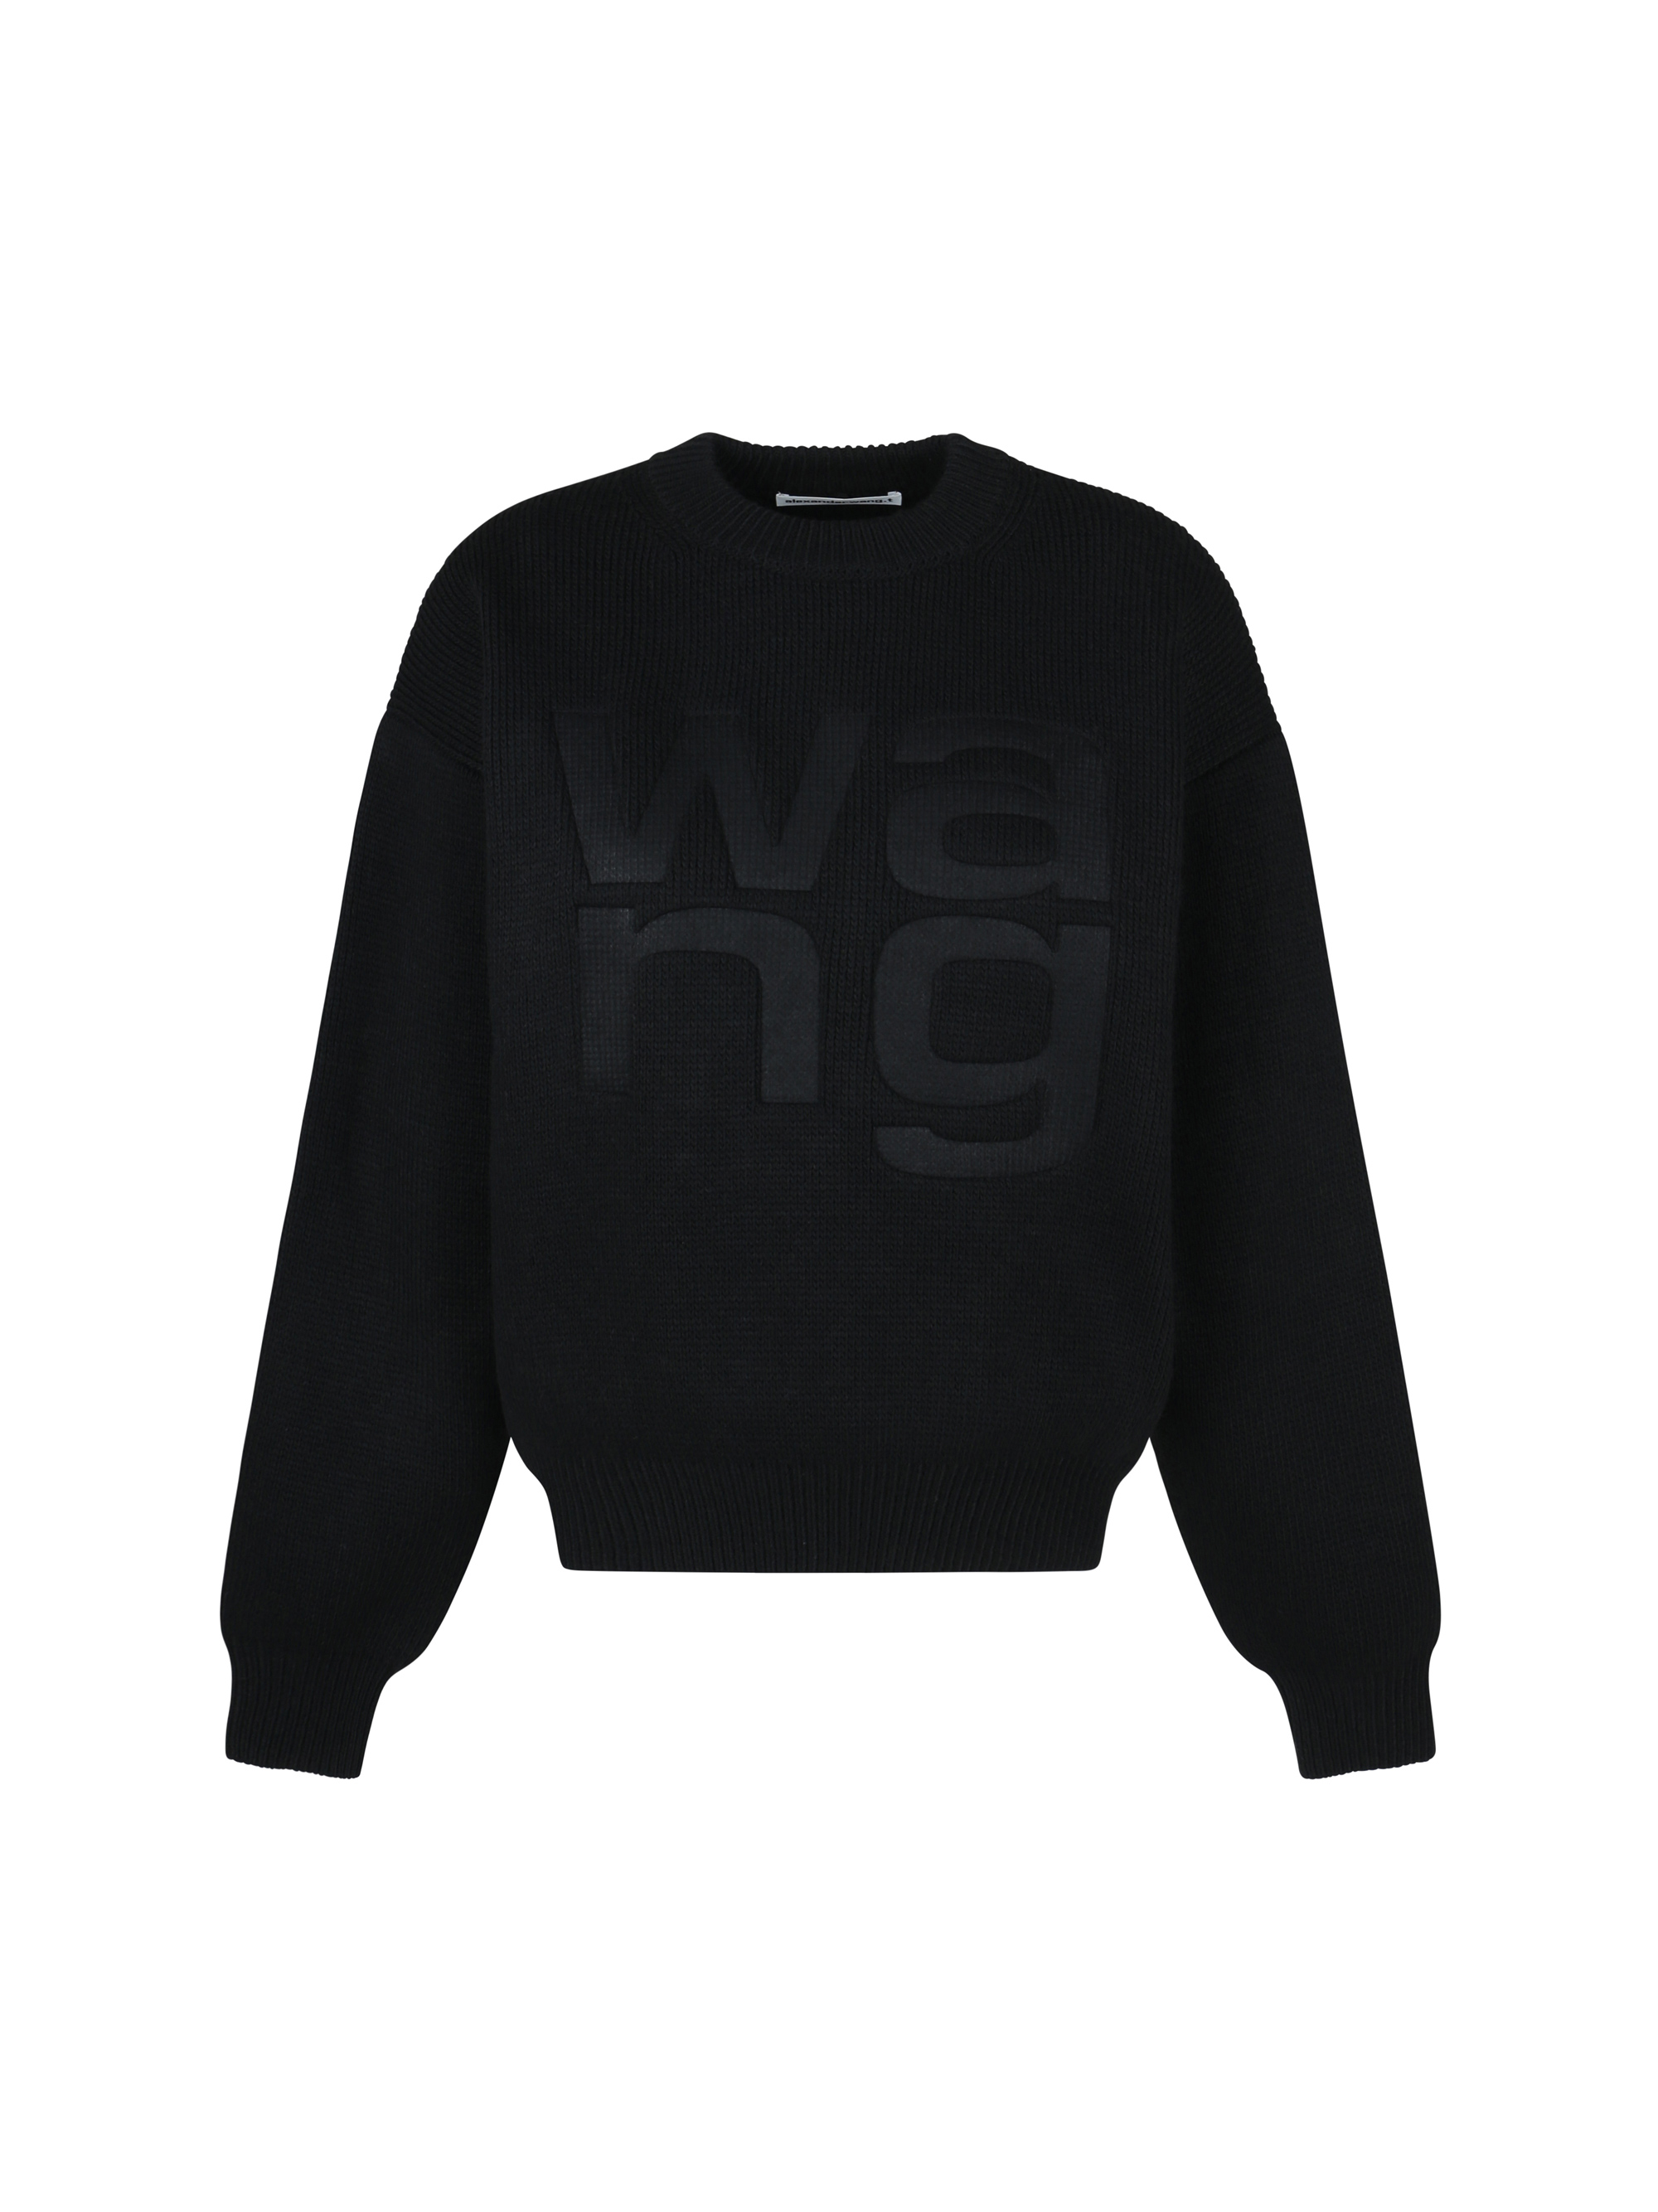 alexander wang - sweater